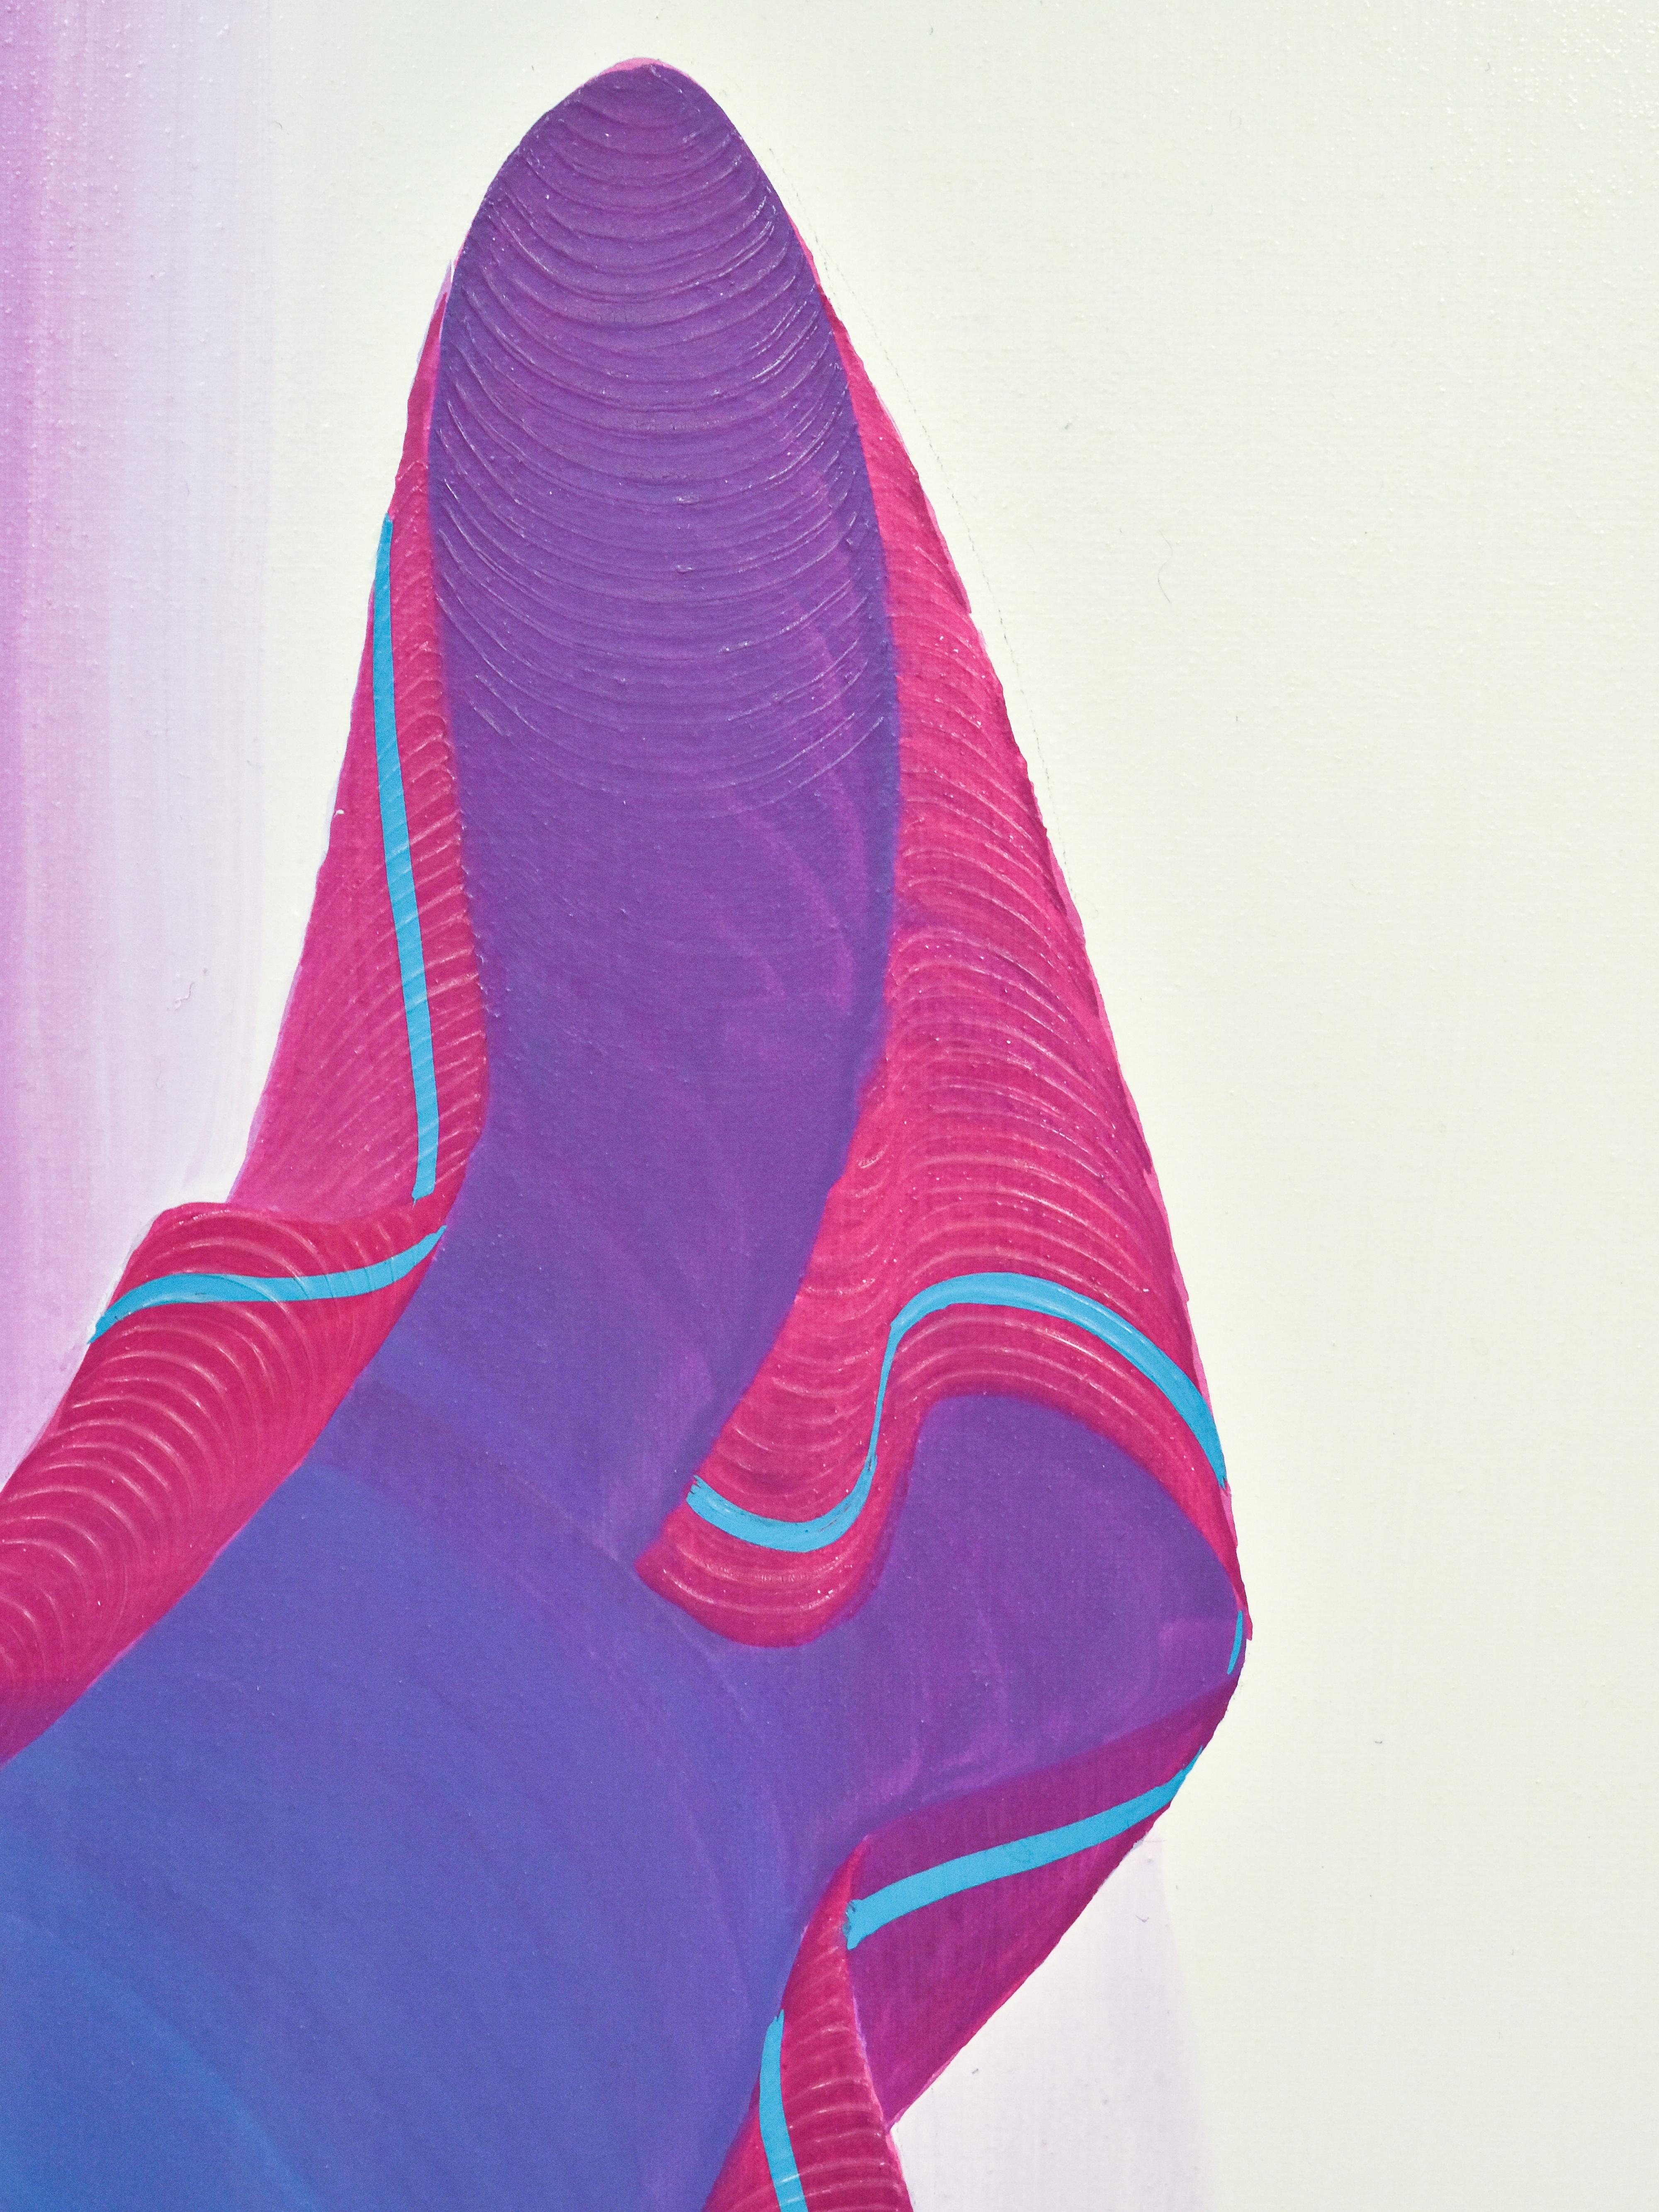 Femme en robe violette - Oil paint on canvas - Jean Loup Gasnier For Sale 1